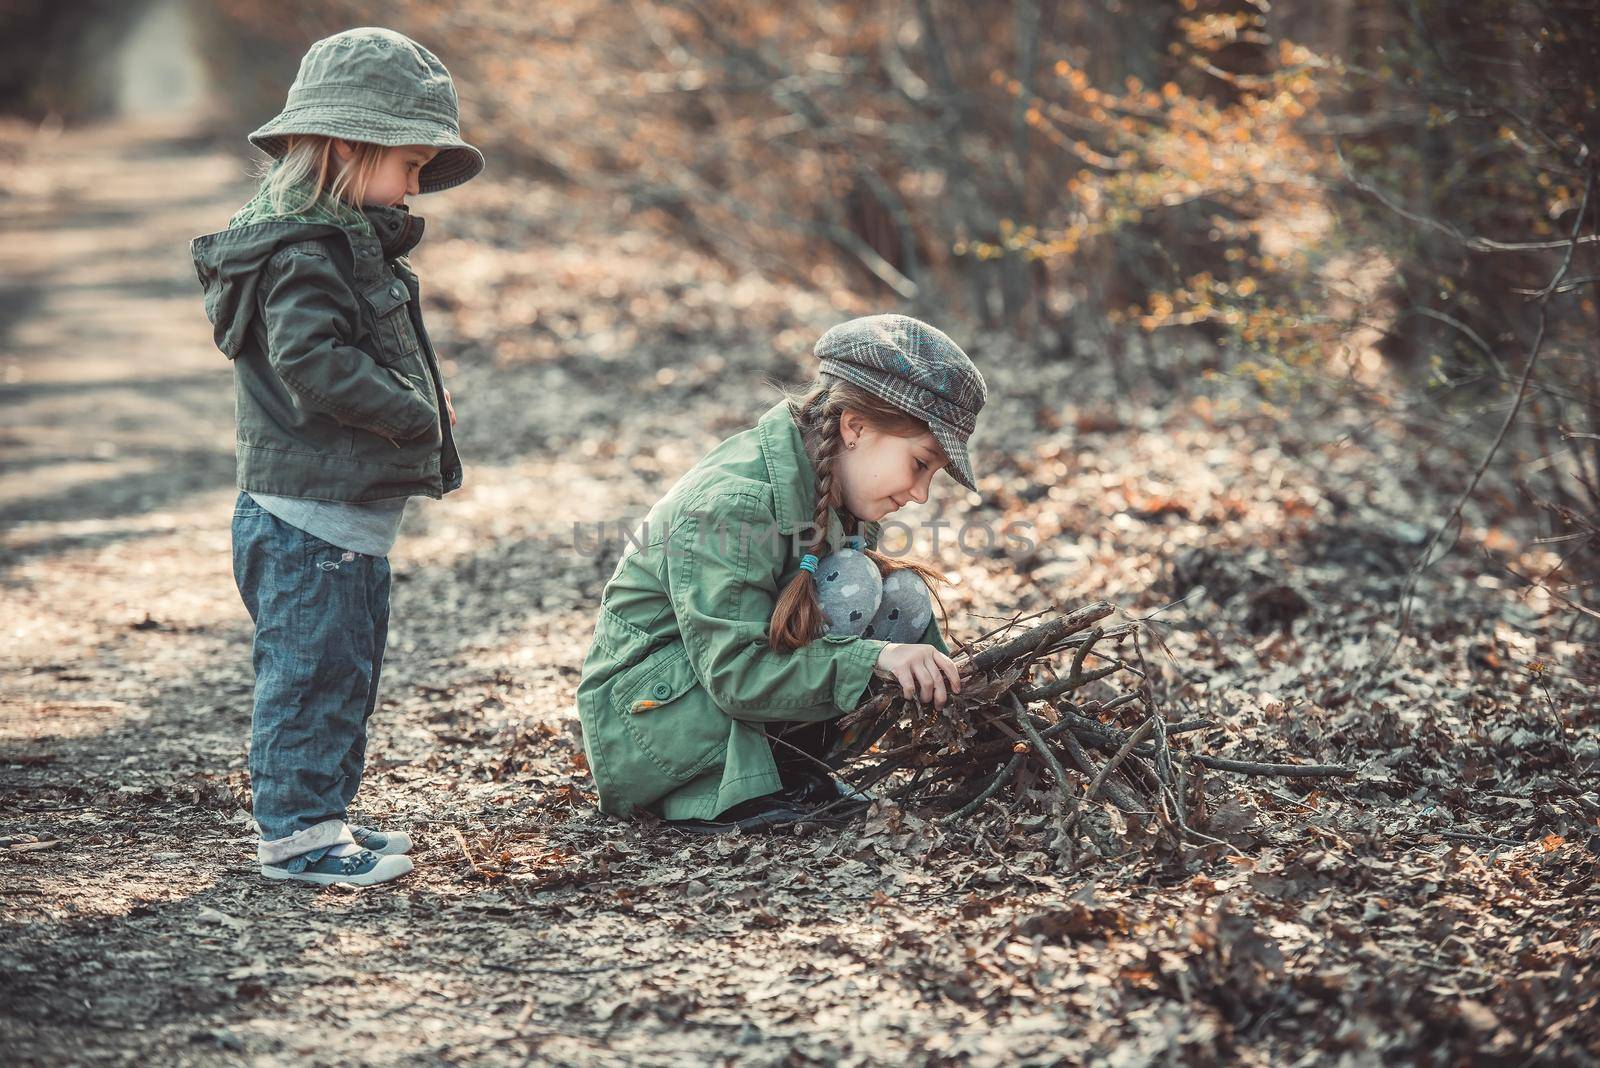 children play in the woods by GekaSkr